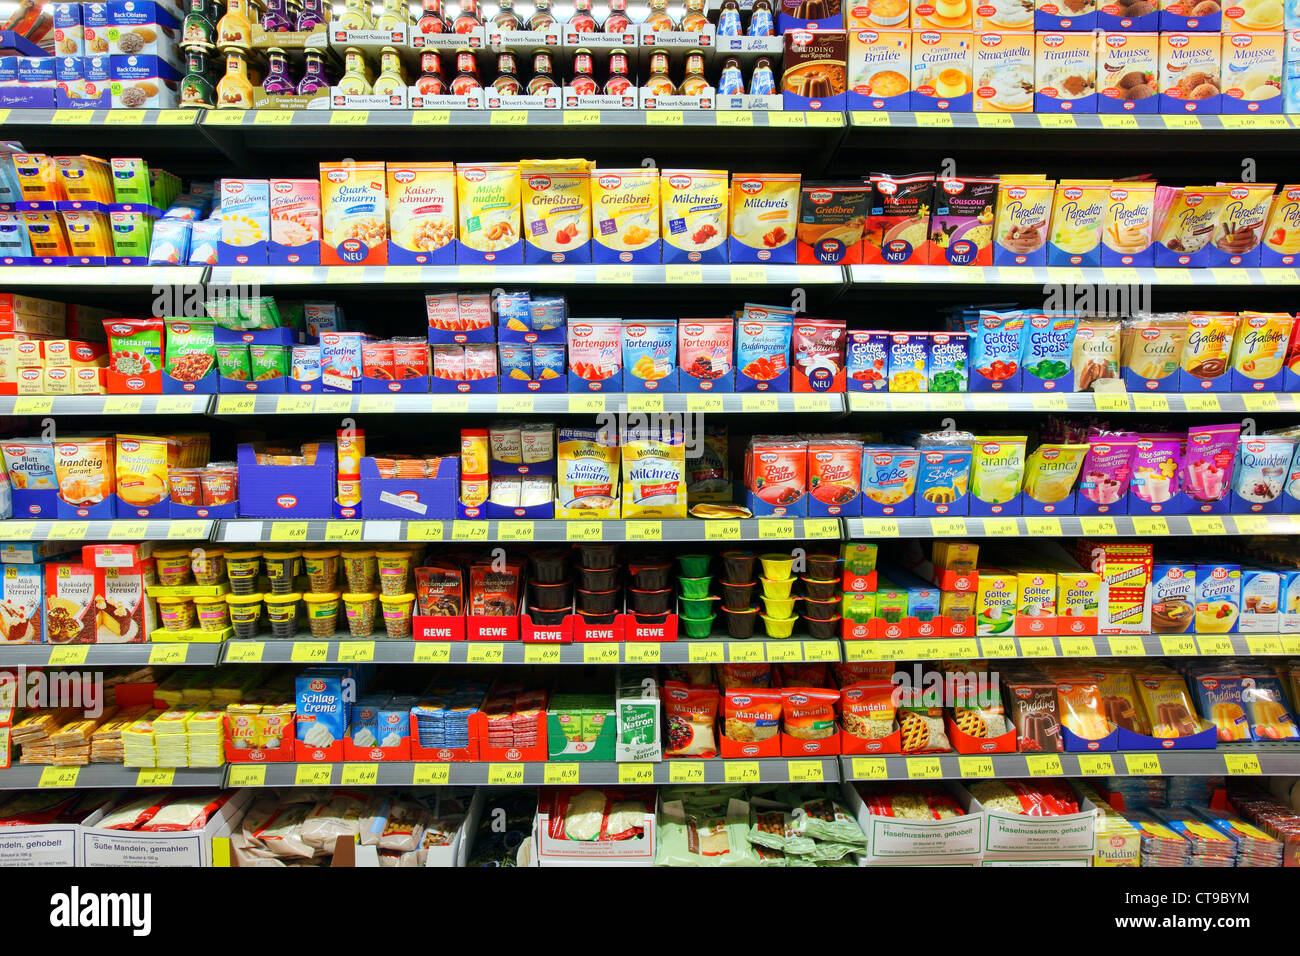 El auto-servicio, estante de supermercado, rack con diferentes productos, alimentos. Foto de stock